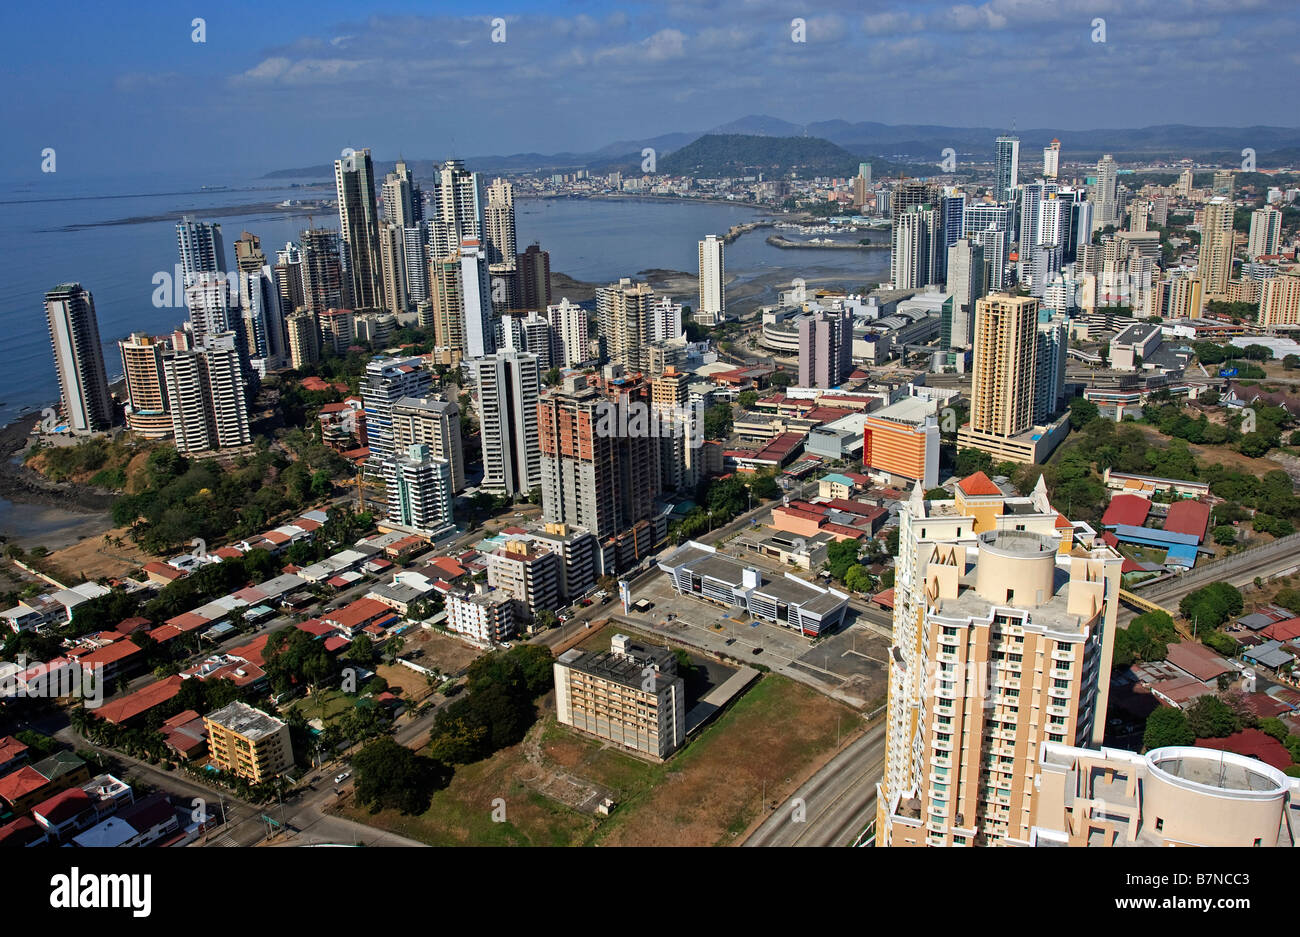 Panama City City Ciudad de Panamá Top to bottom, left to right: Panama Canal, Skyline, Bridge of the Americas, The bovedas, Casco Viejo of Panama. Stock Photo